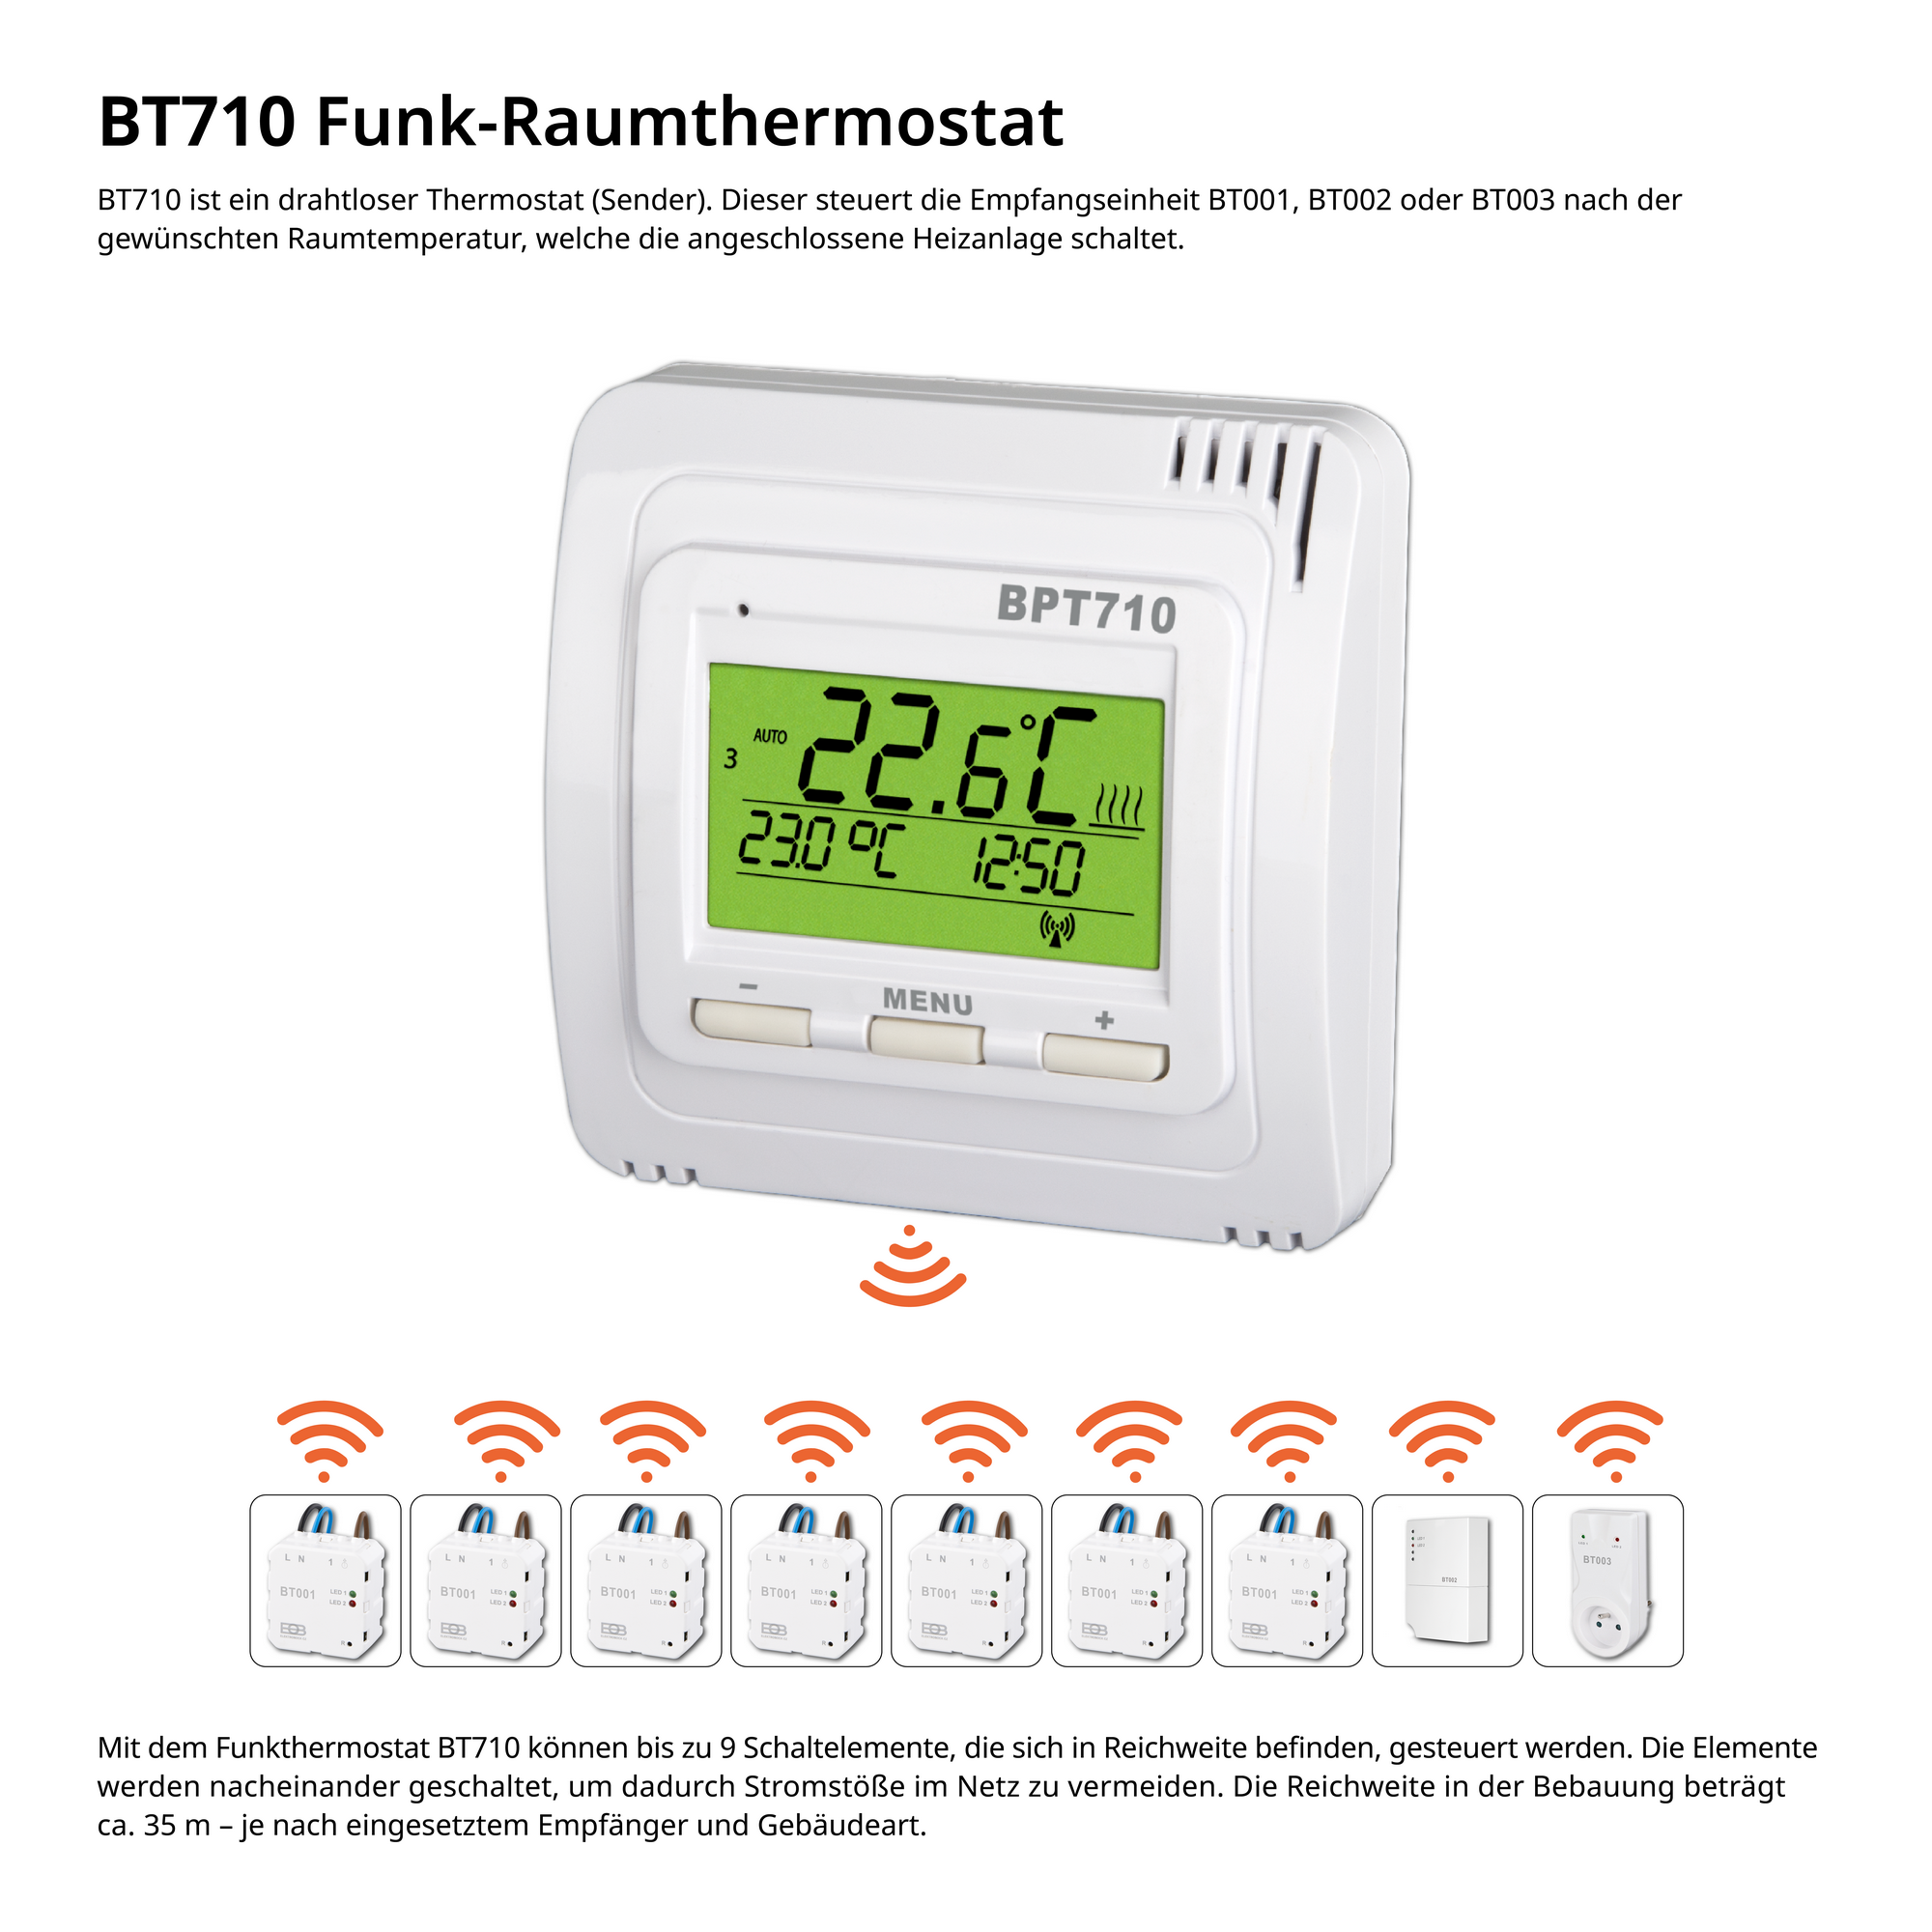 Funk-Thermostat-Empfänger für elektrische Heizkörper 'BT0002' + product picture